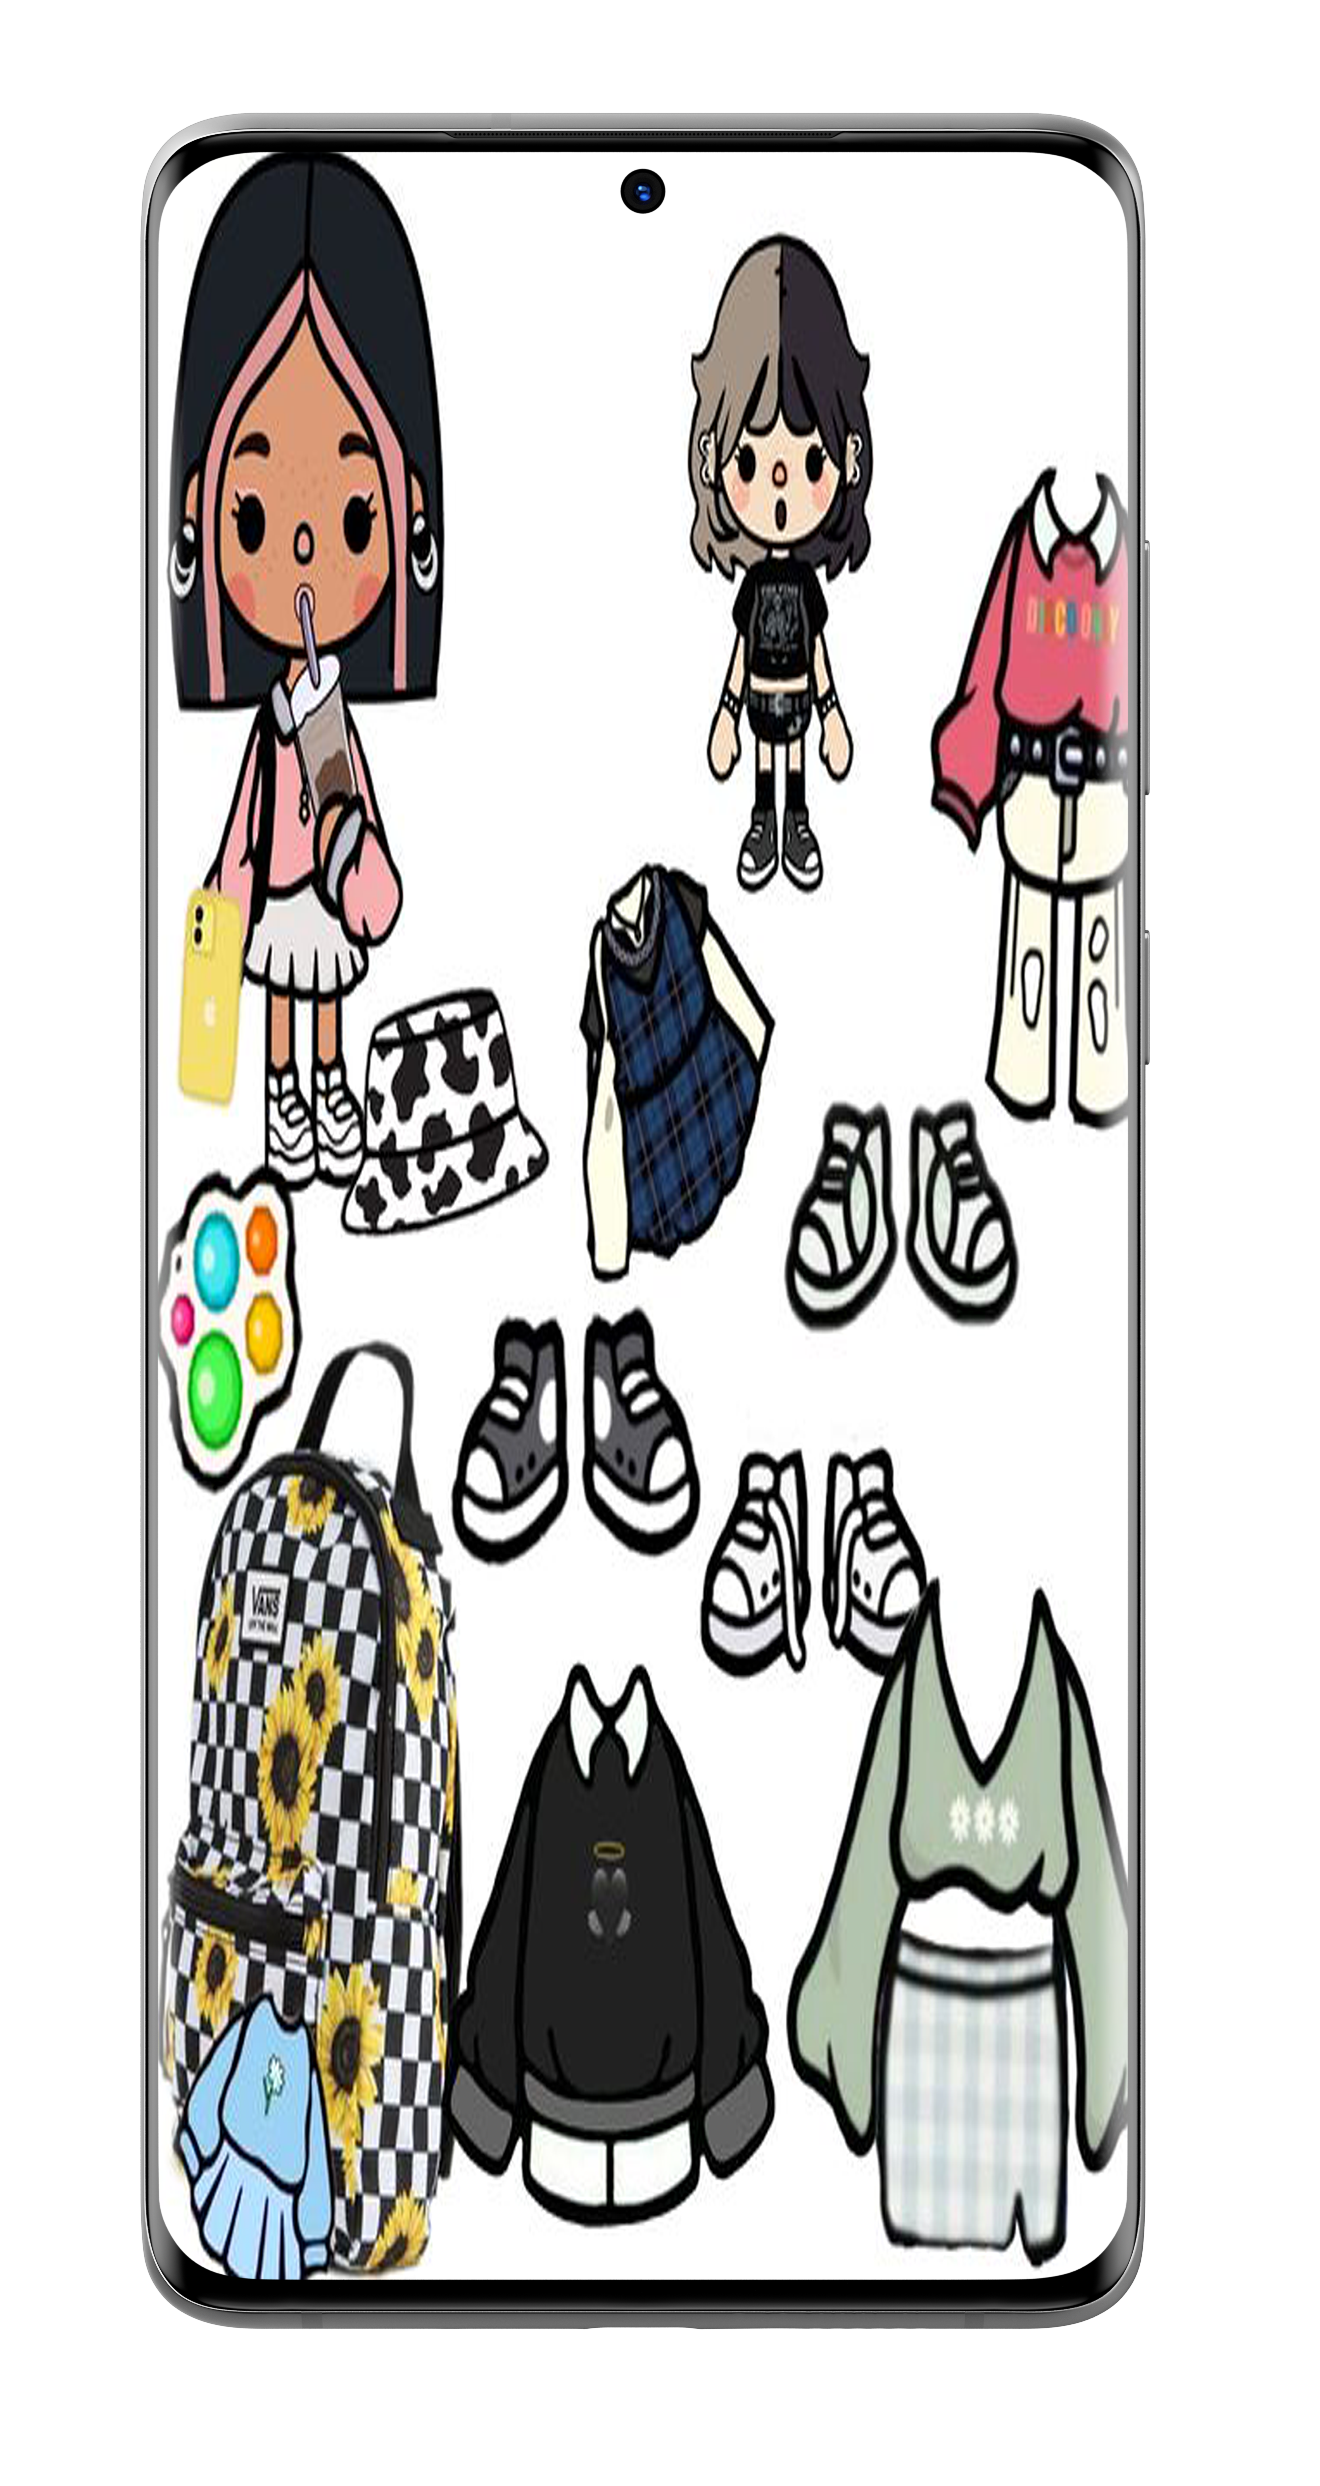 Toca Boca Outfit Ideas screenshot game